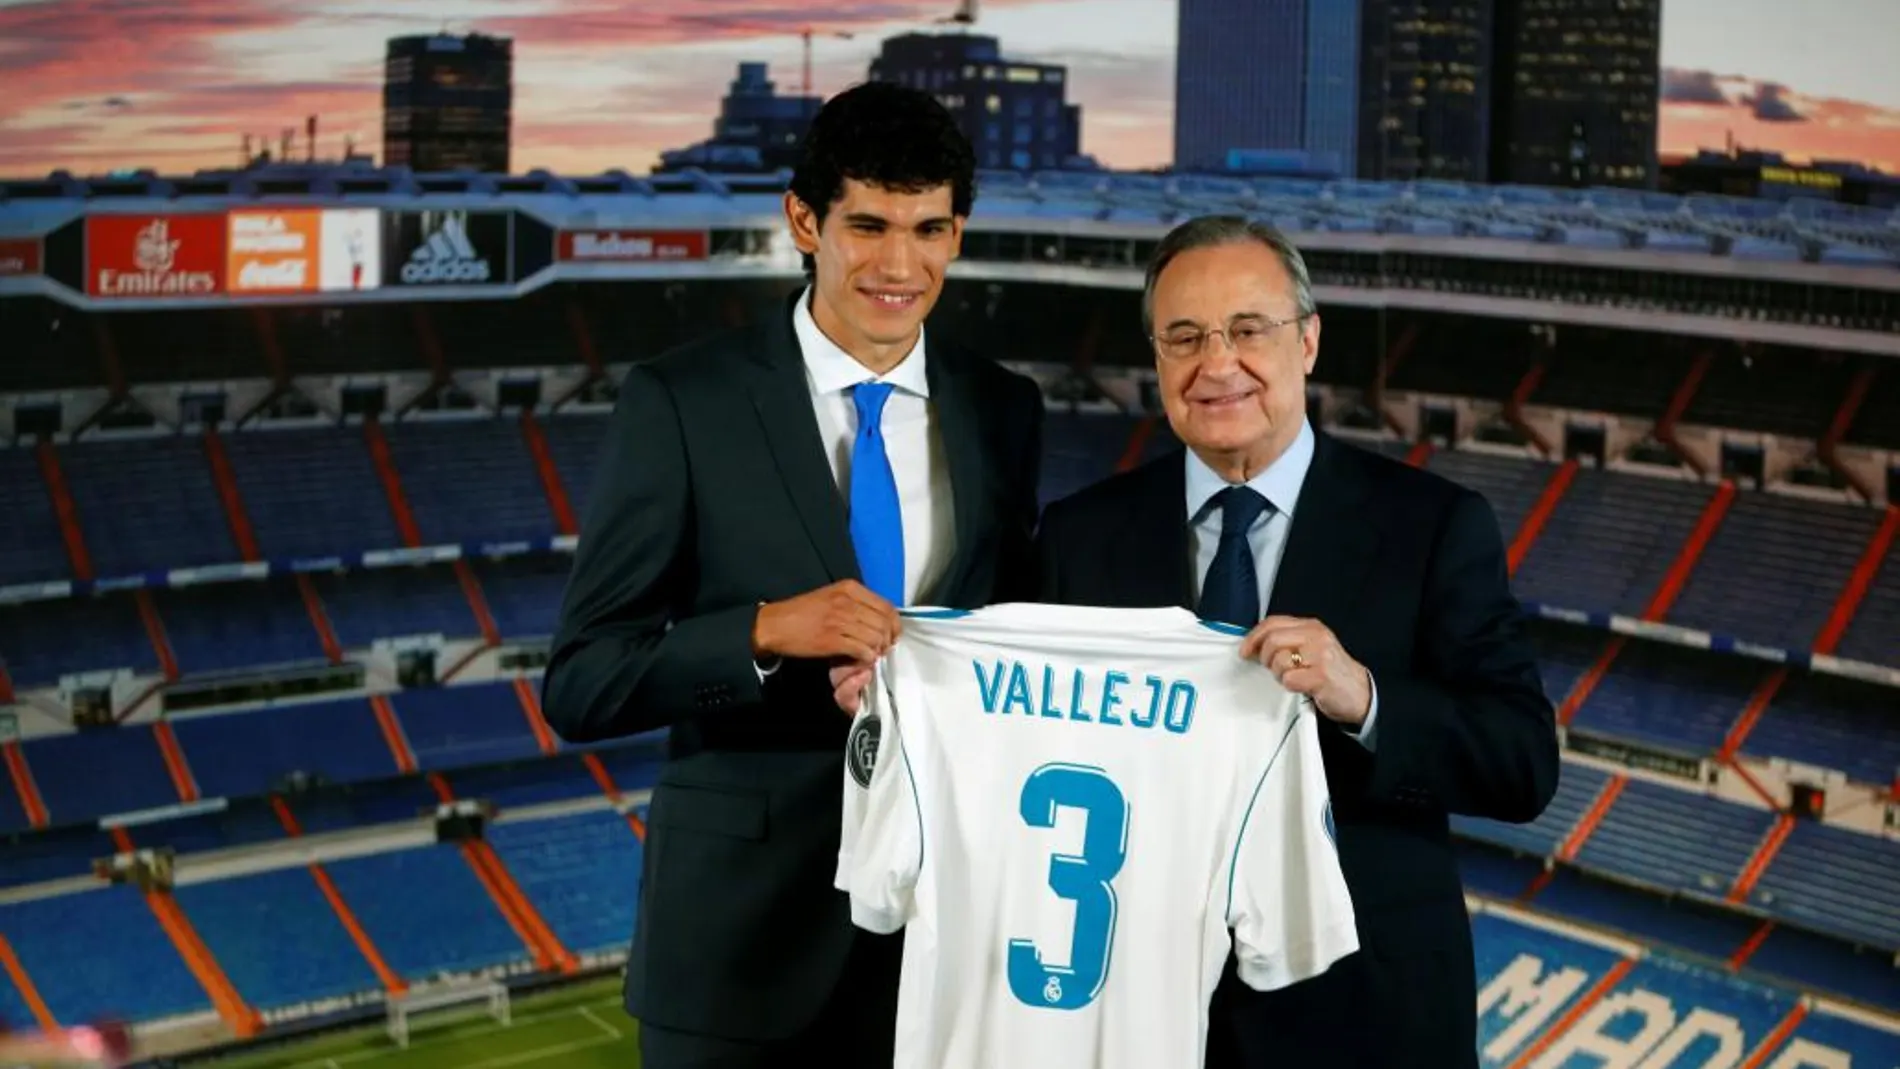 El presidente del Real Madrid, Florentino Perez, junton a Jesús Vallejo durante la presentación del jugador